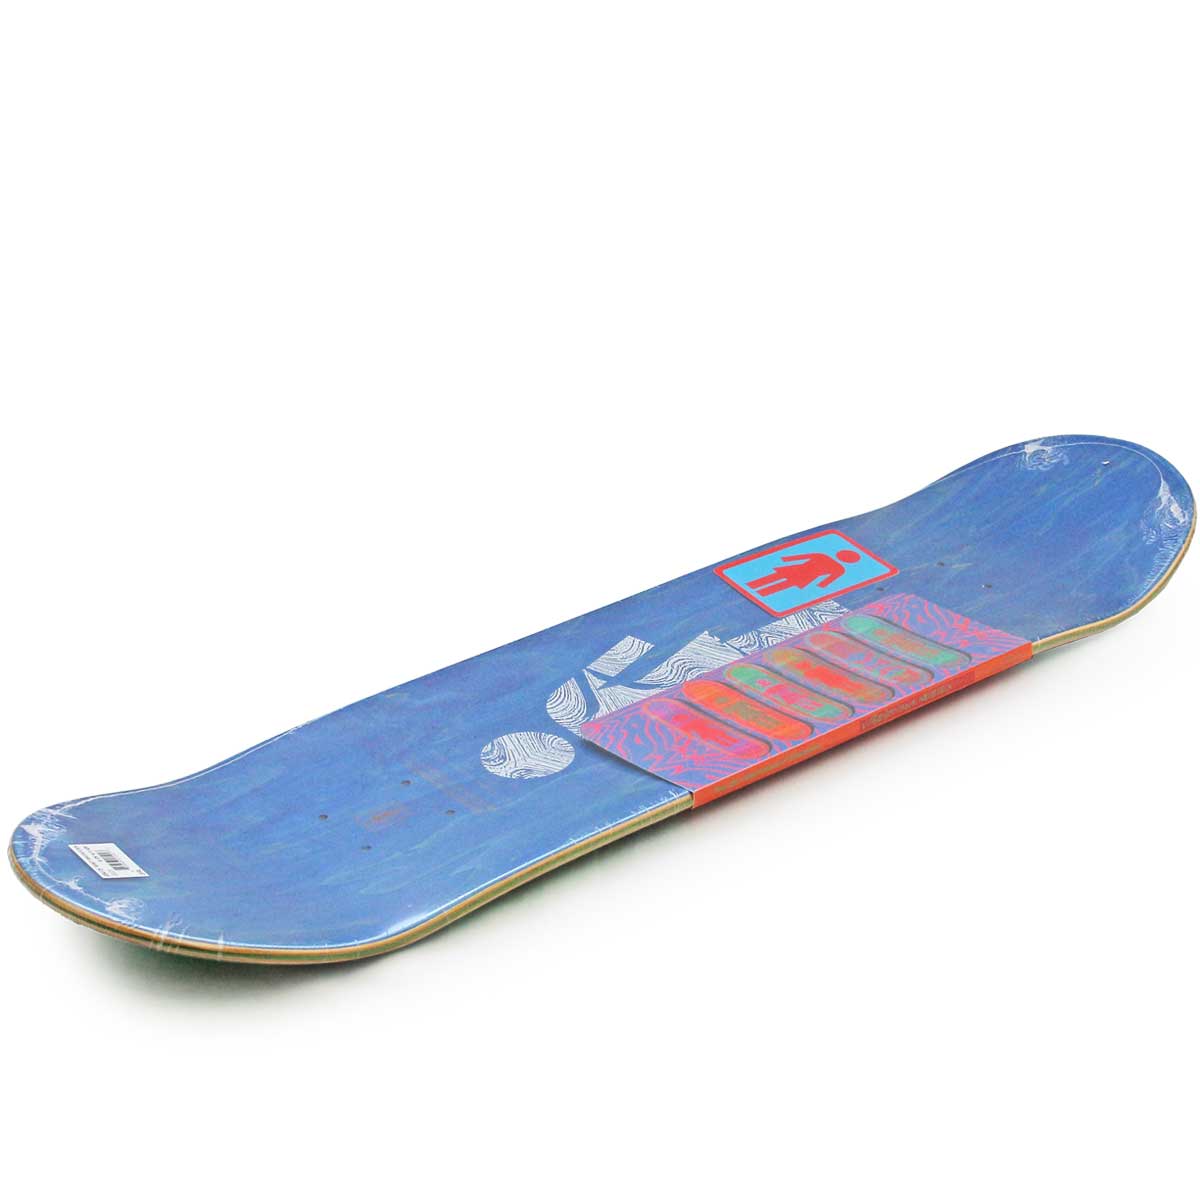 ガール 8.125インチ スケボー デッキ Girl Skateboards Pro Banarott Vibrations OG Deck  スケートボード ブランド スケボーデッキ おしゃれ ブランド